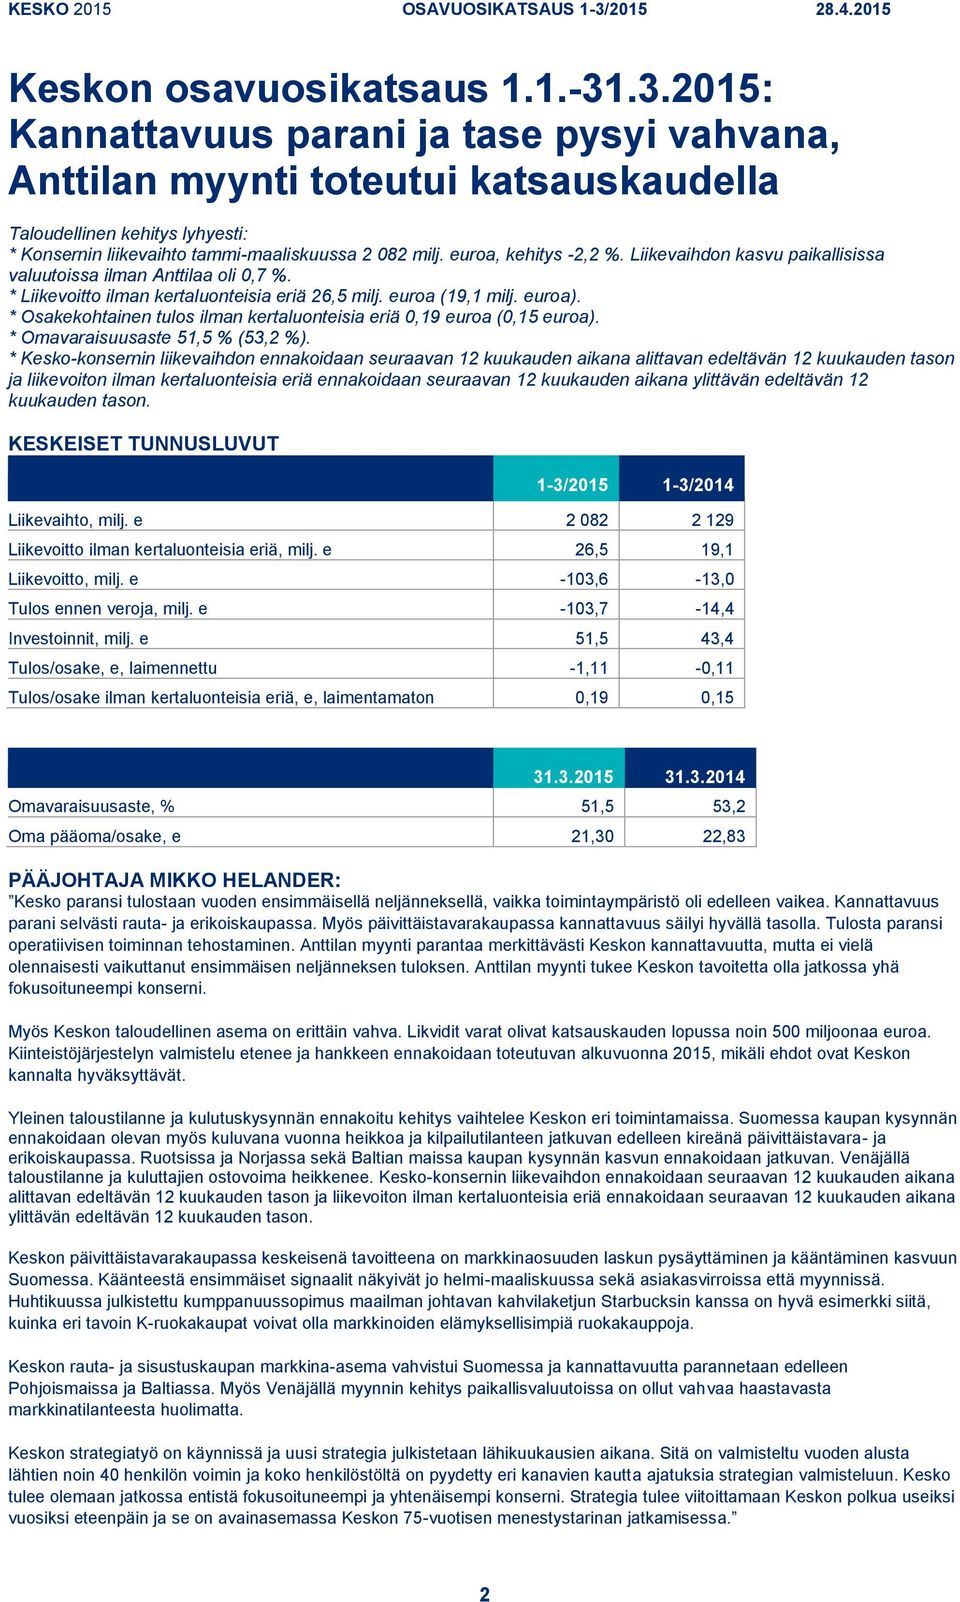 Liikevaihdon kasvu paikallisissa valuutoissa ilman Anttilaa oli 0,7 %. * Liikevoitto ilman kertaluonteisia eriä 26,5 milj. euroa (19,1 milj. euroa).